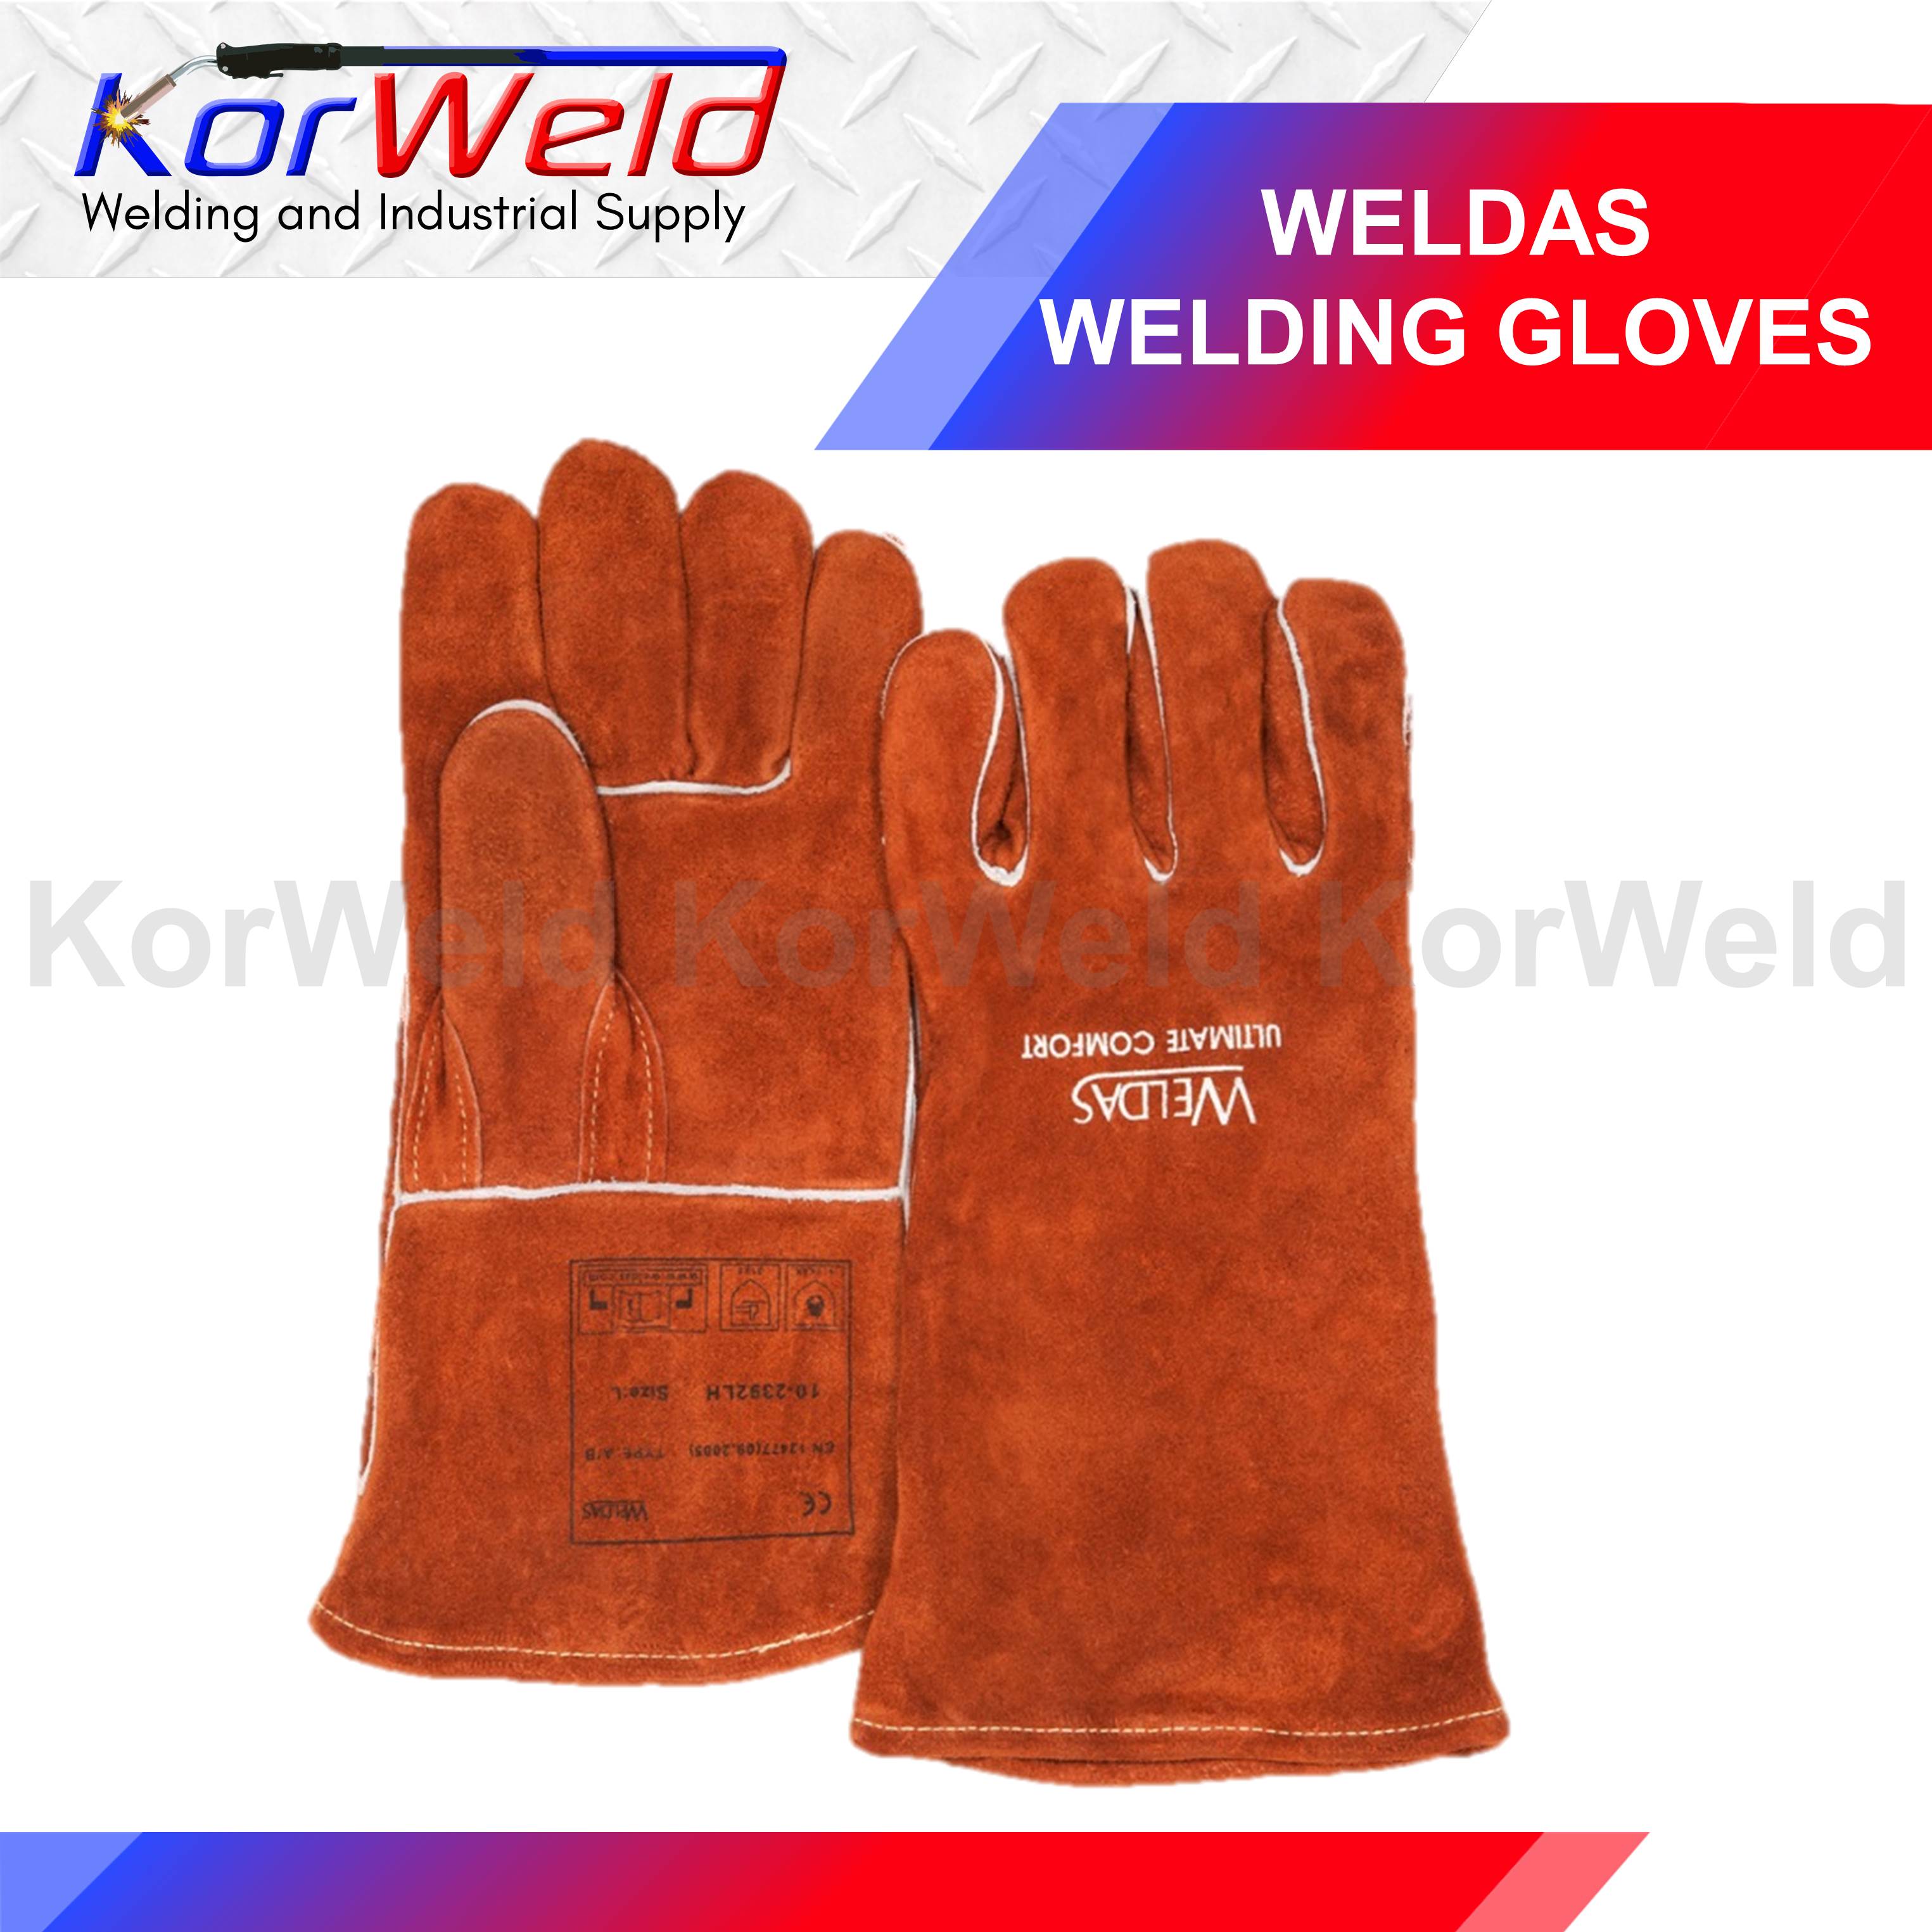 S L XL XXL Size WELDAS MIG/MAG Welding Gloves Premium Quality Split Leather 